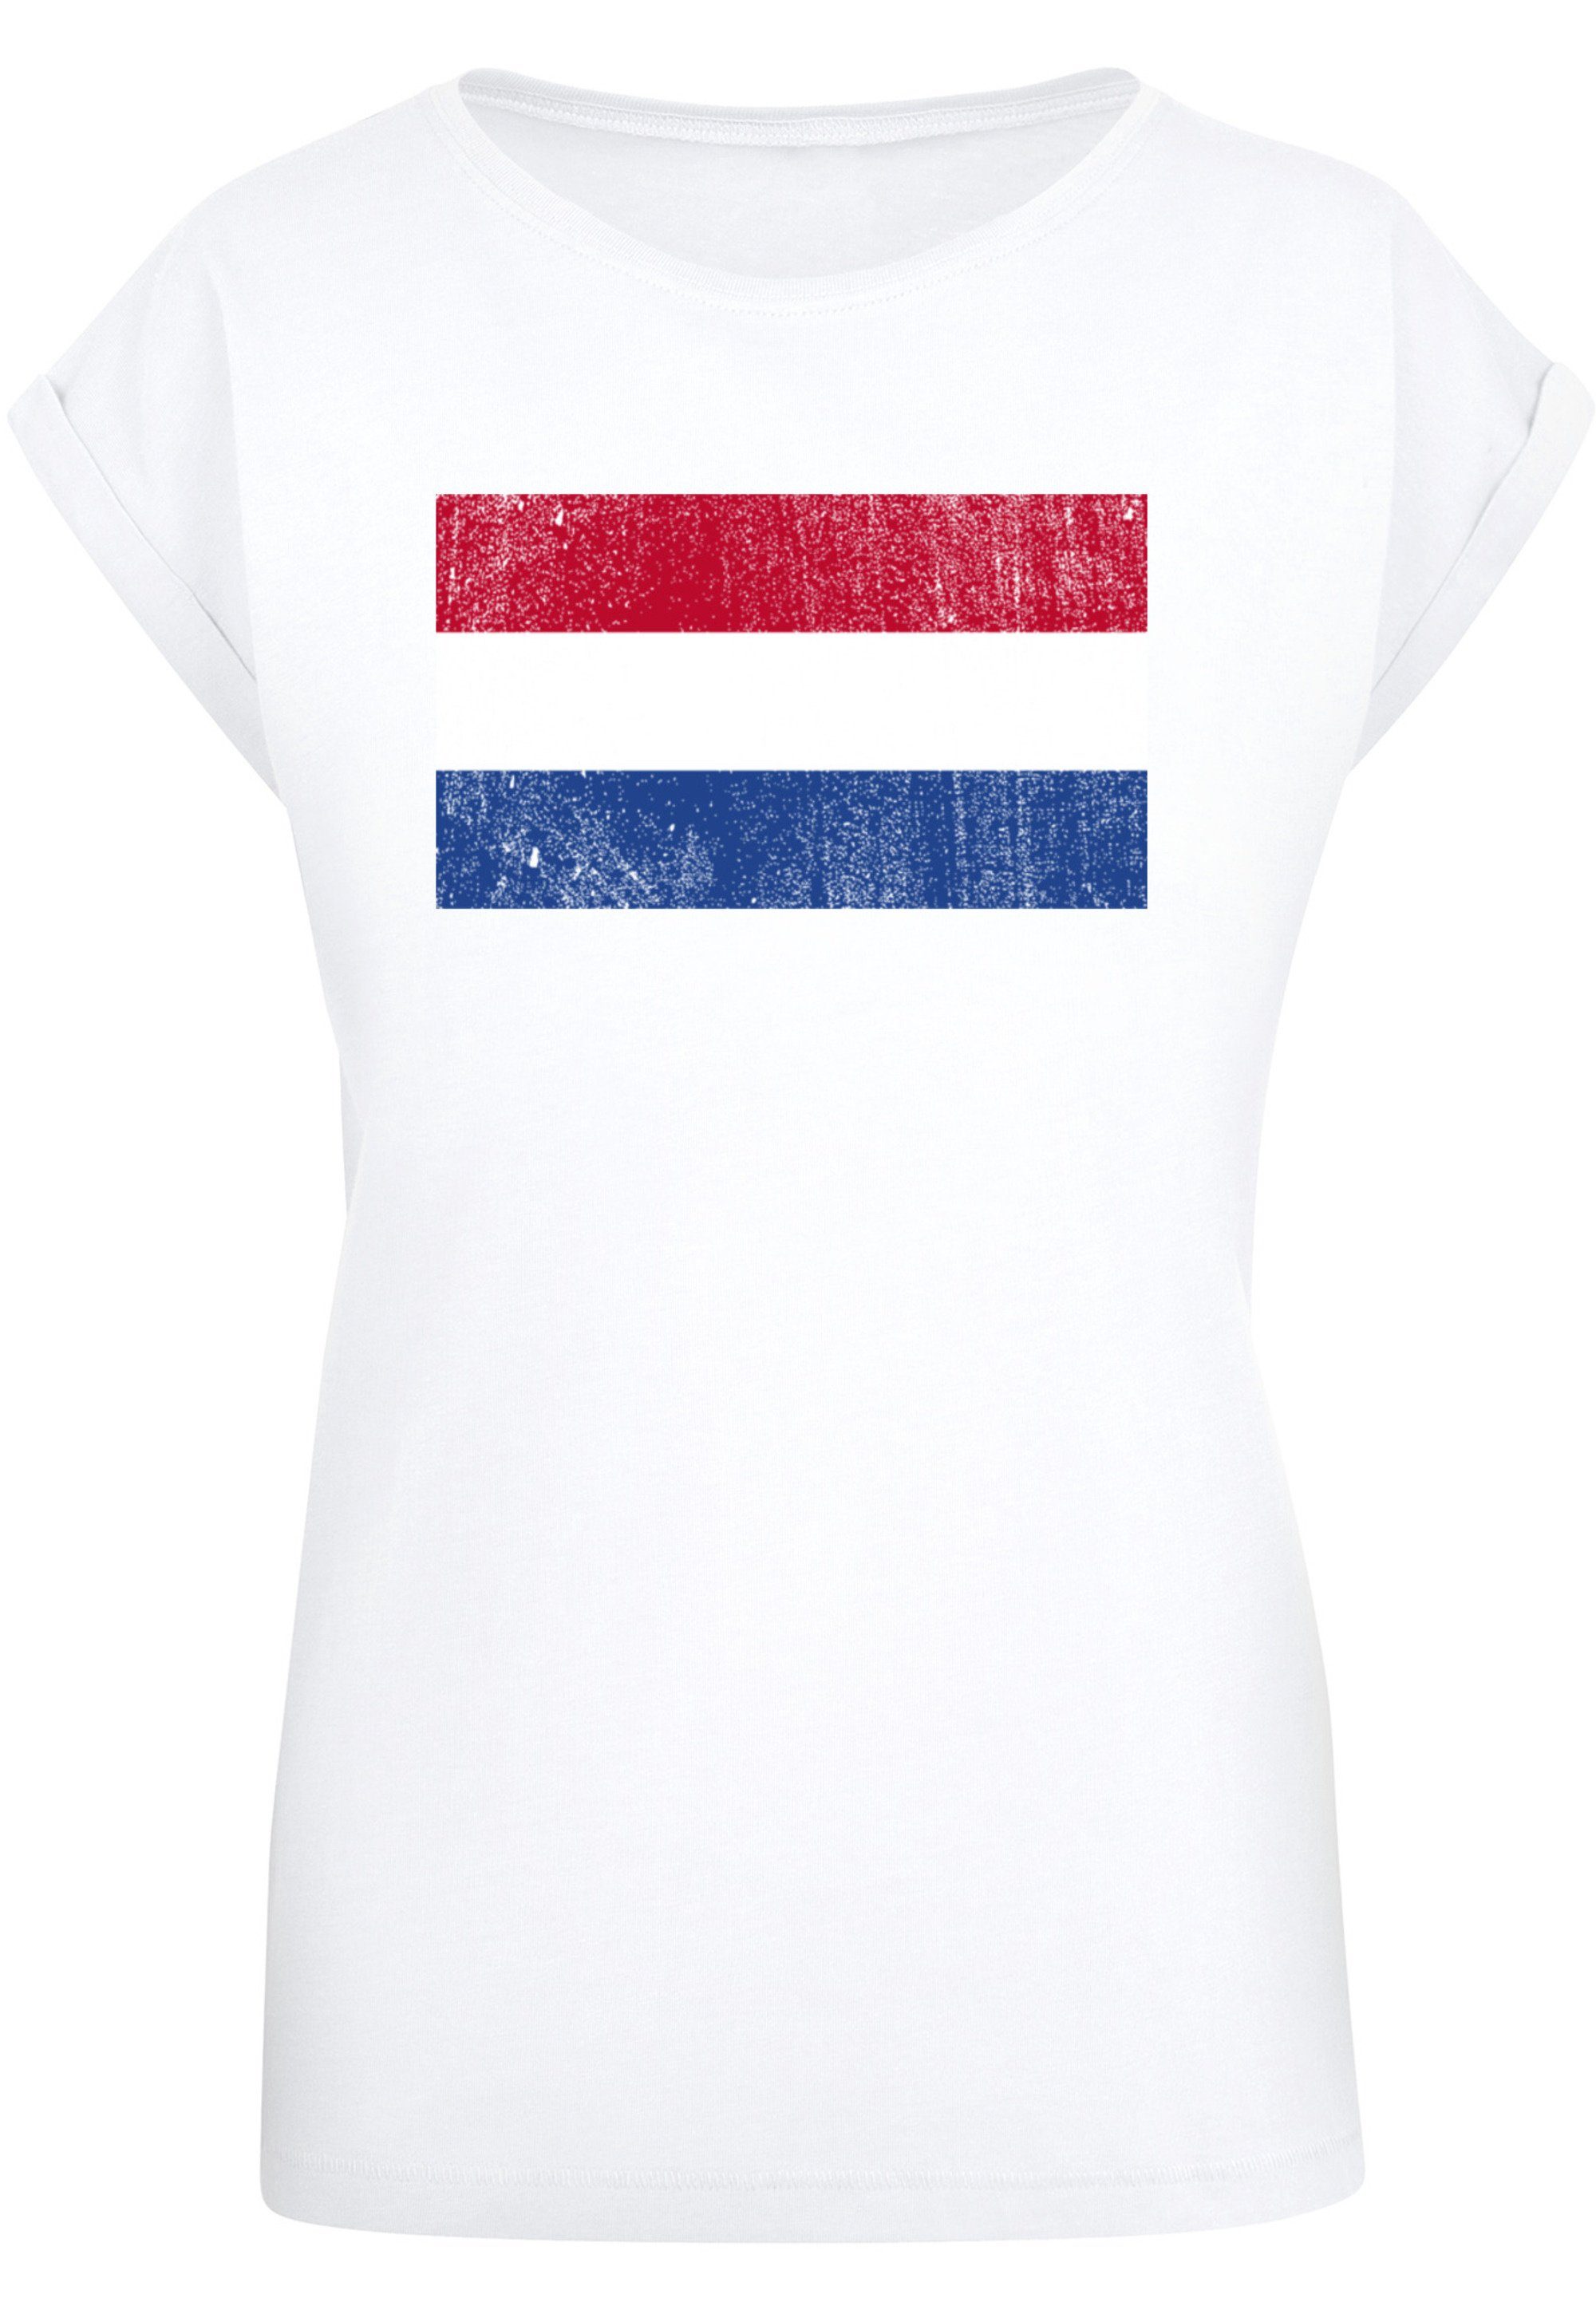 cm Print, groß distressed Flagge ist NIederlande M Netherlands 170 Größe trägt und Model Das T-Shirt F4NT4STIC Holland